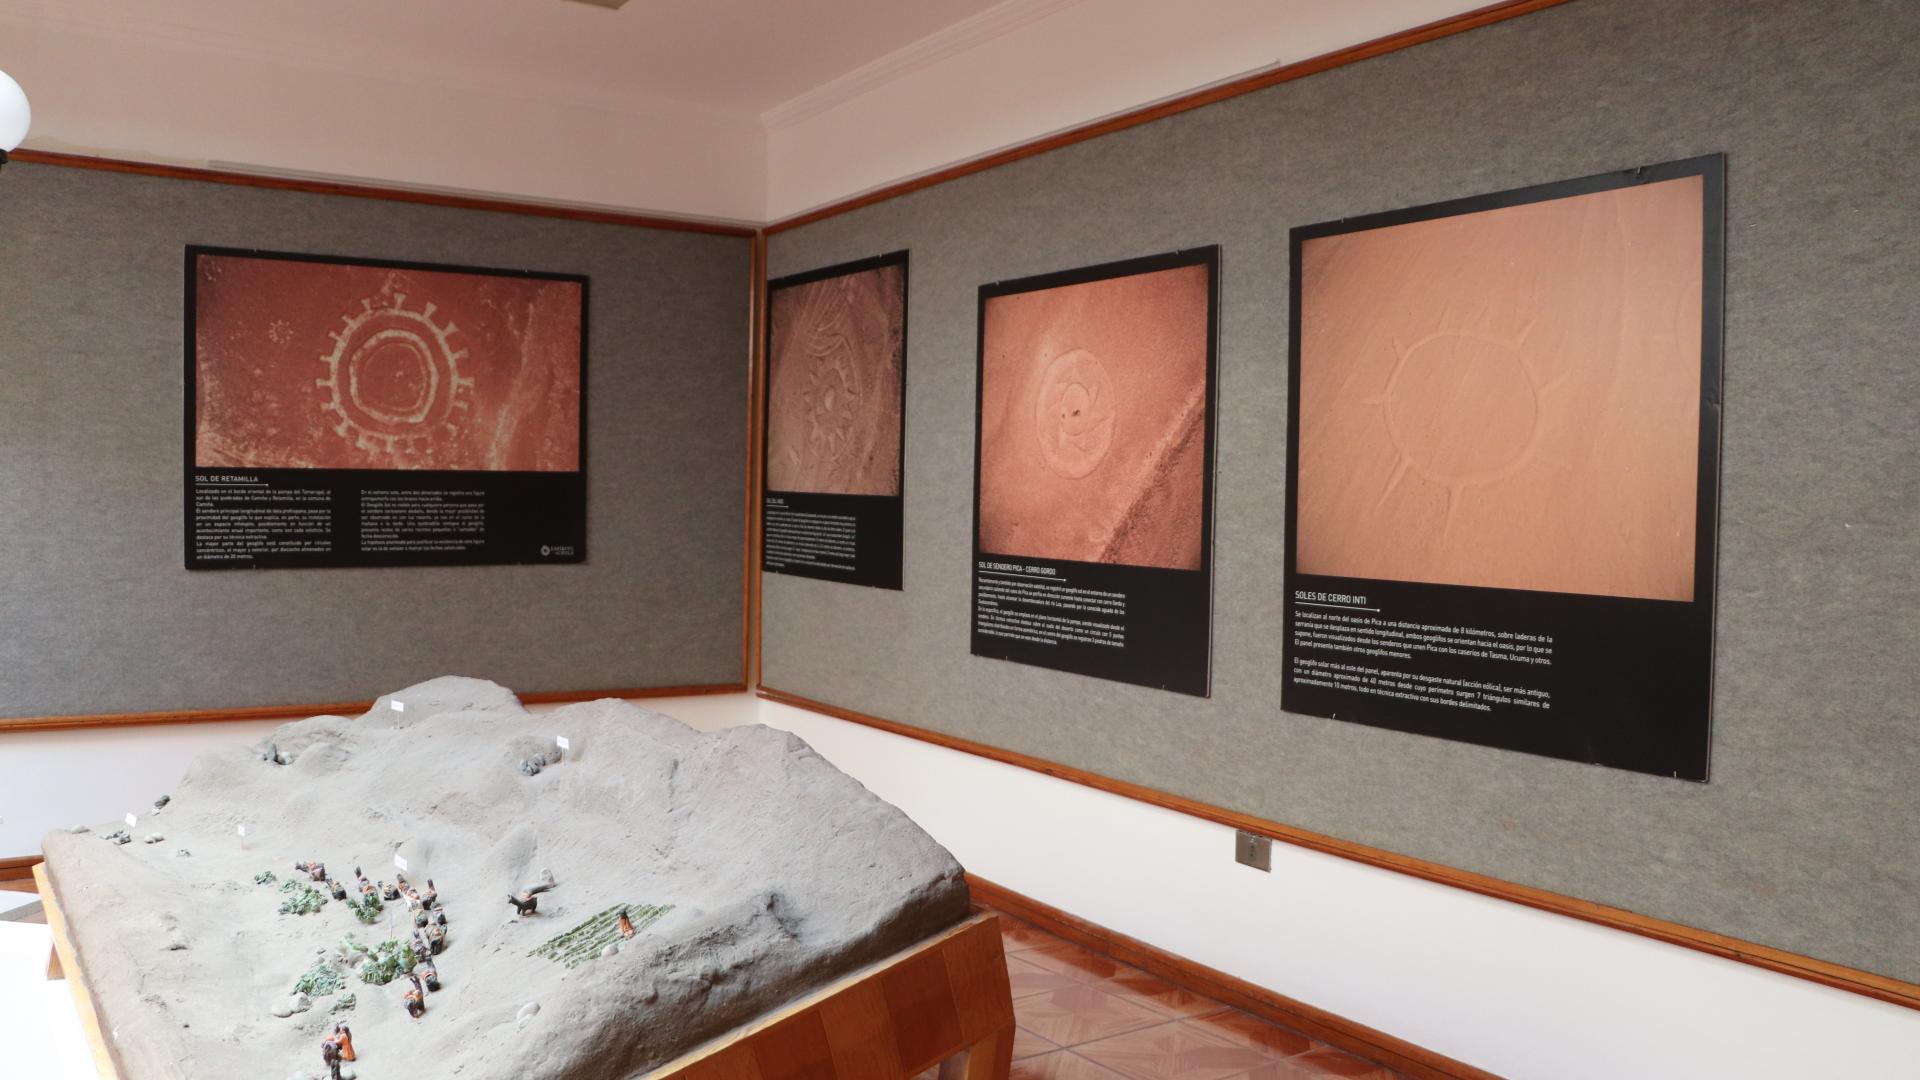 Interior museo: Exhibición de fotografía y maqueta de sitio arqueológico